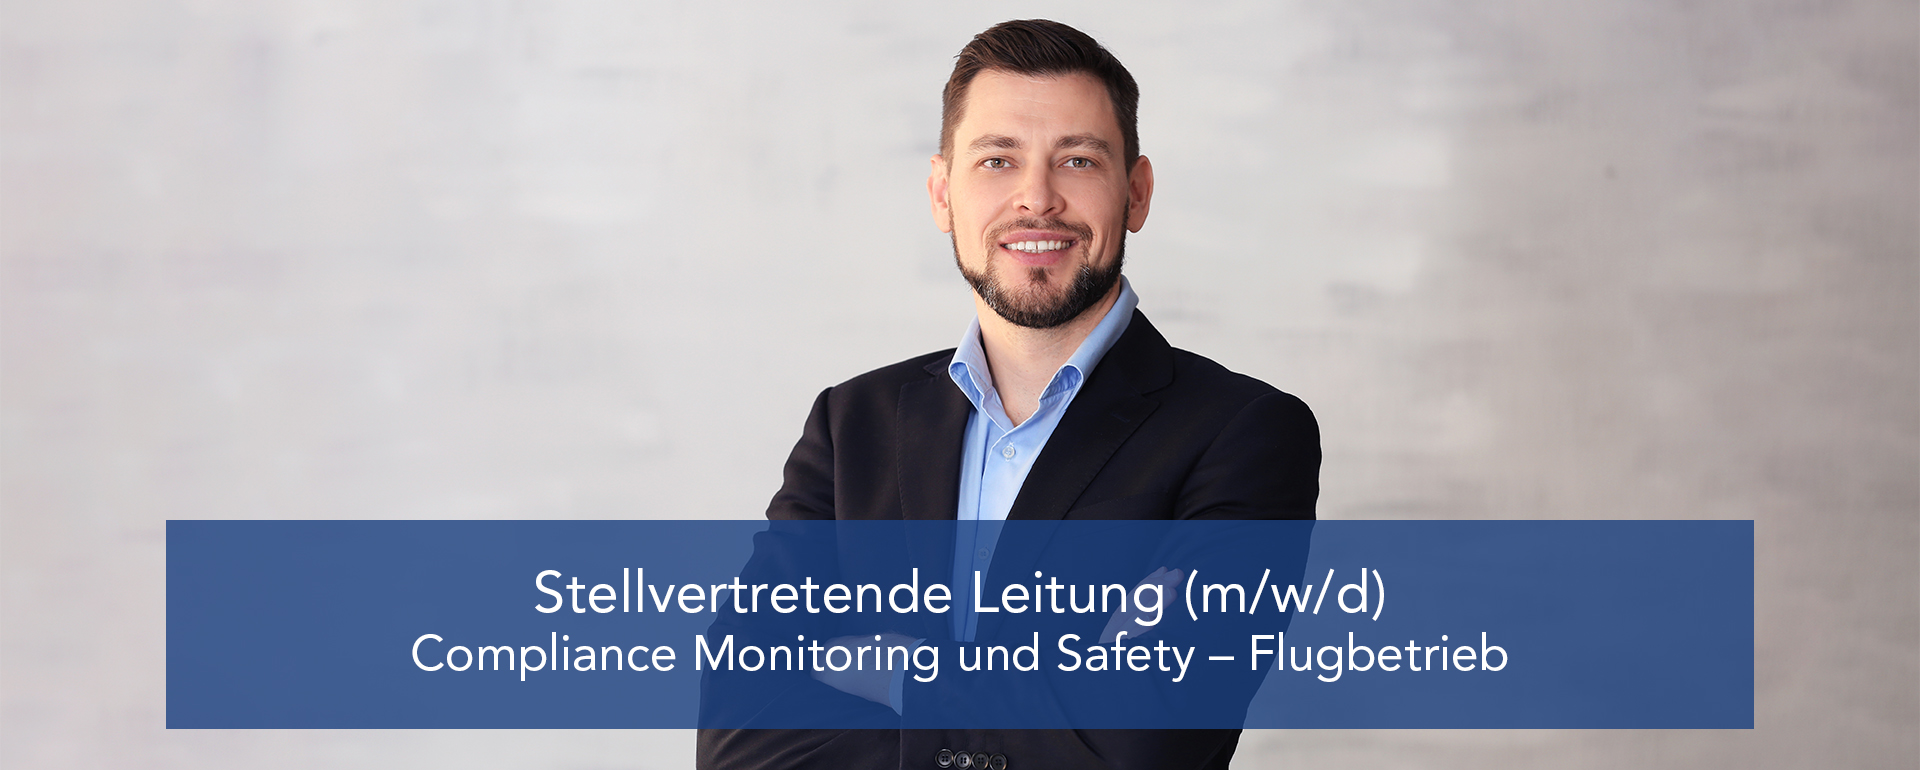 Stellvertretende Leitung (m/w/d) Compliance Monitoring und Safety Management - Flugbetrieb